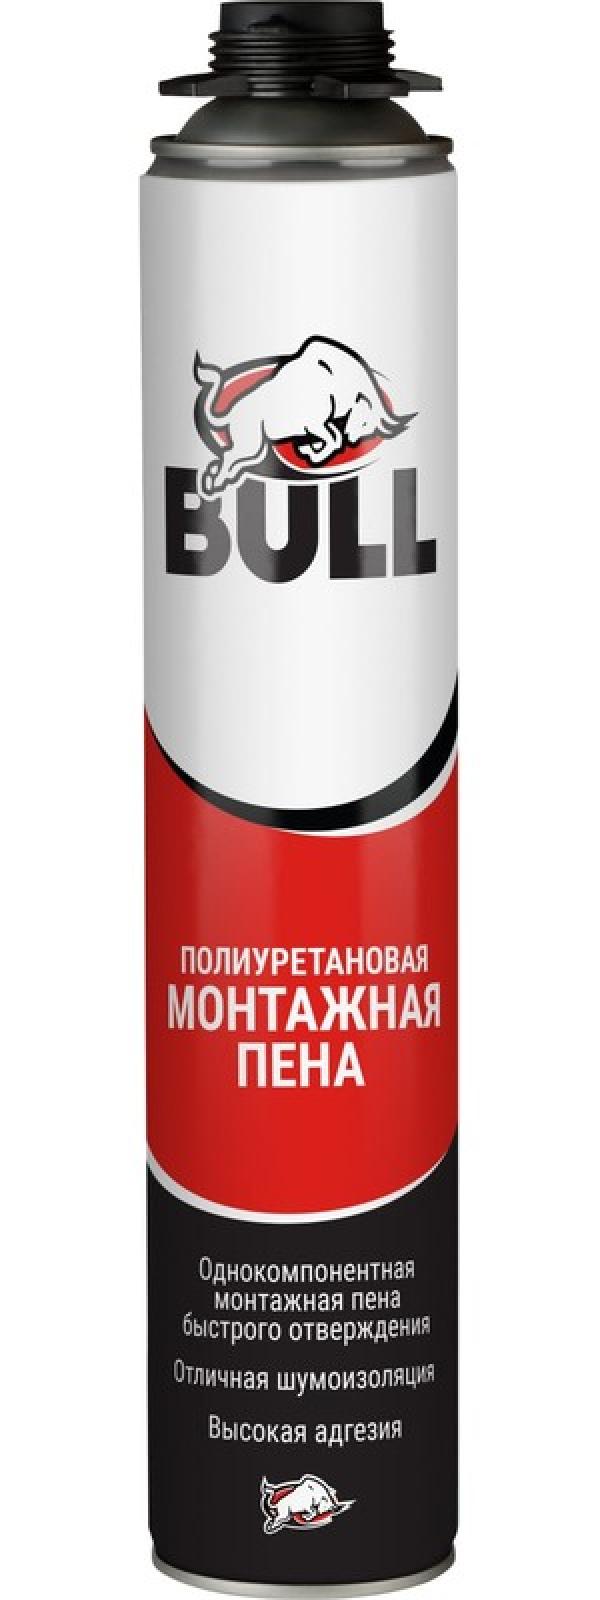 Bull PF65 Профессиональная монтажная пена, 850 гр. купить онлайн за 505 руб. в интернет-магазине ТД ОЛИС